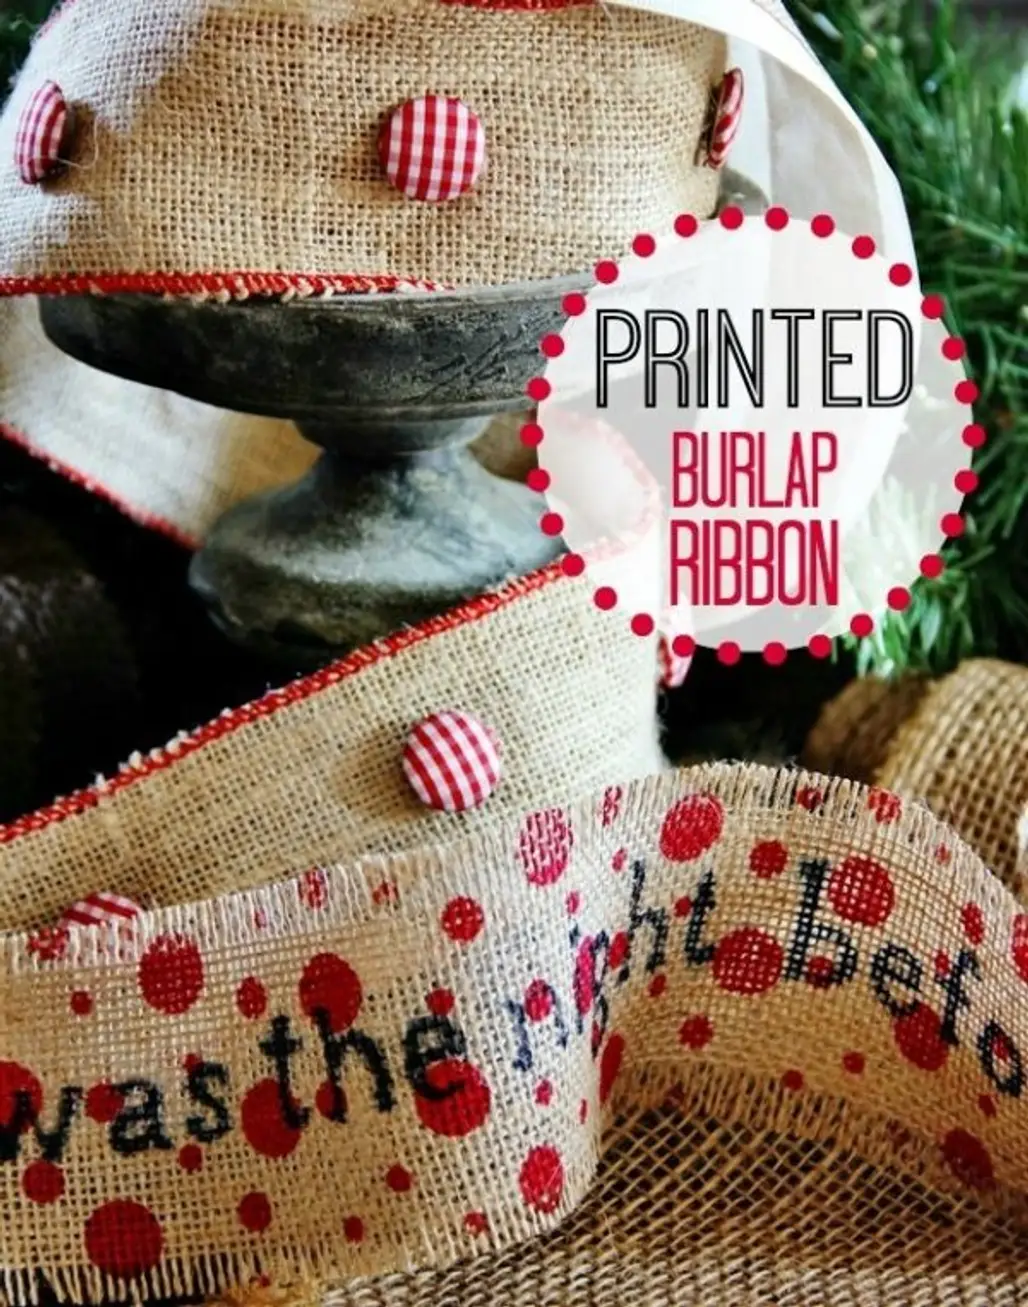 Make Your Own Printed Burlap Ribbon